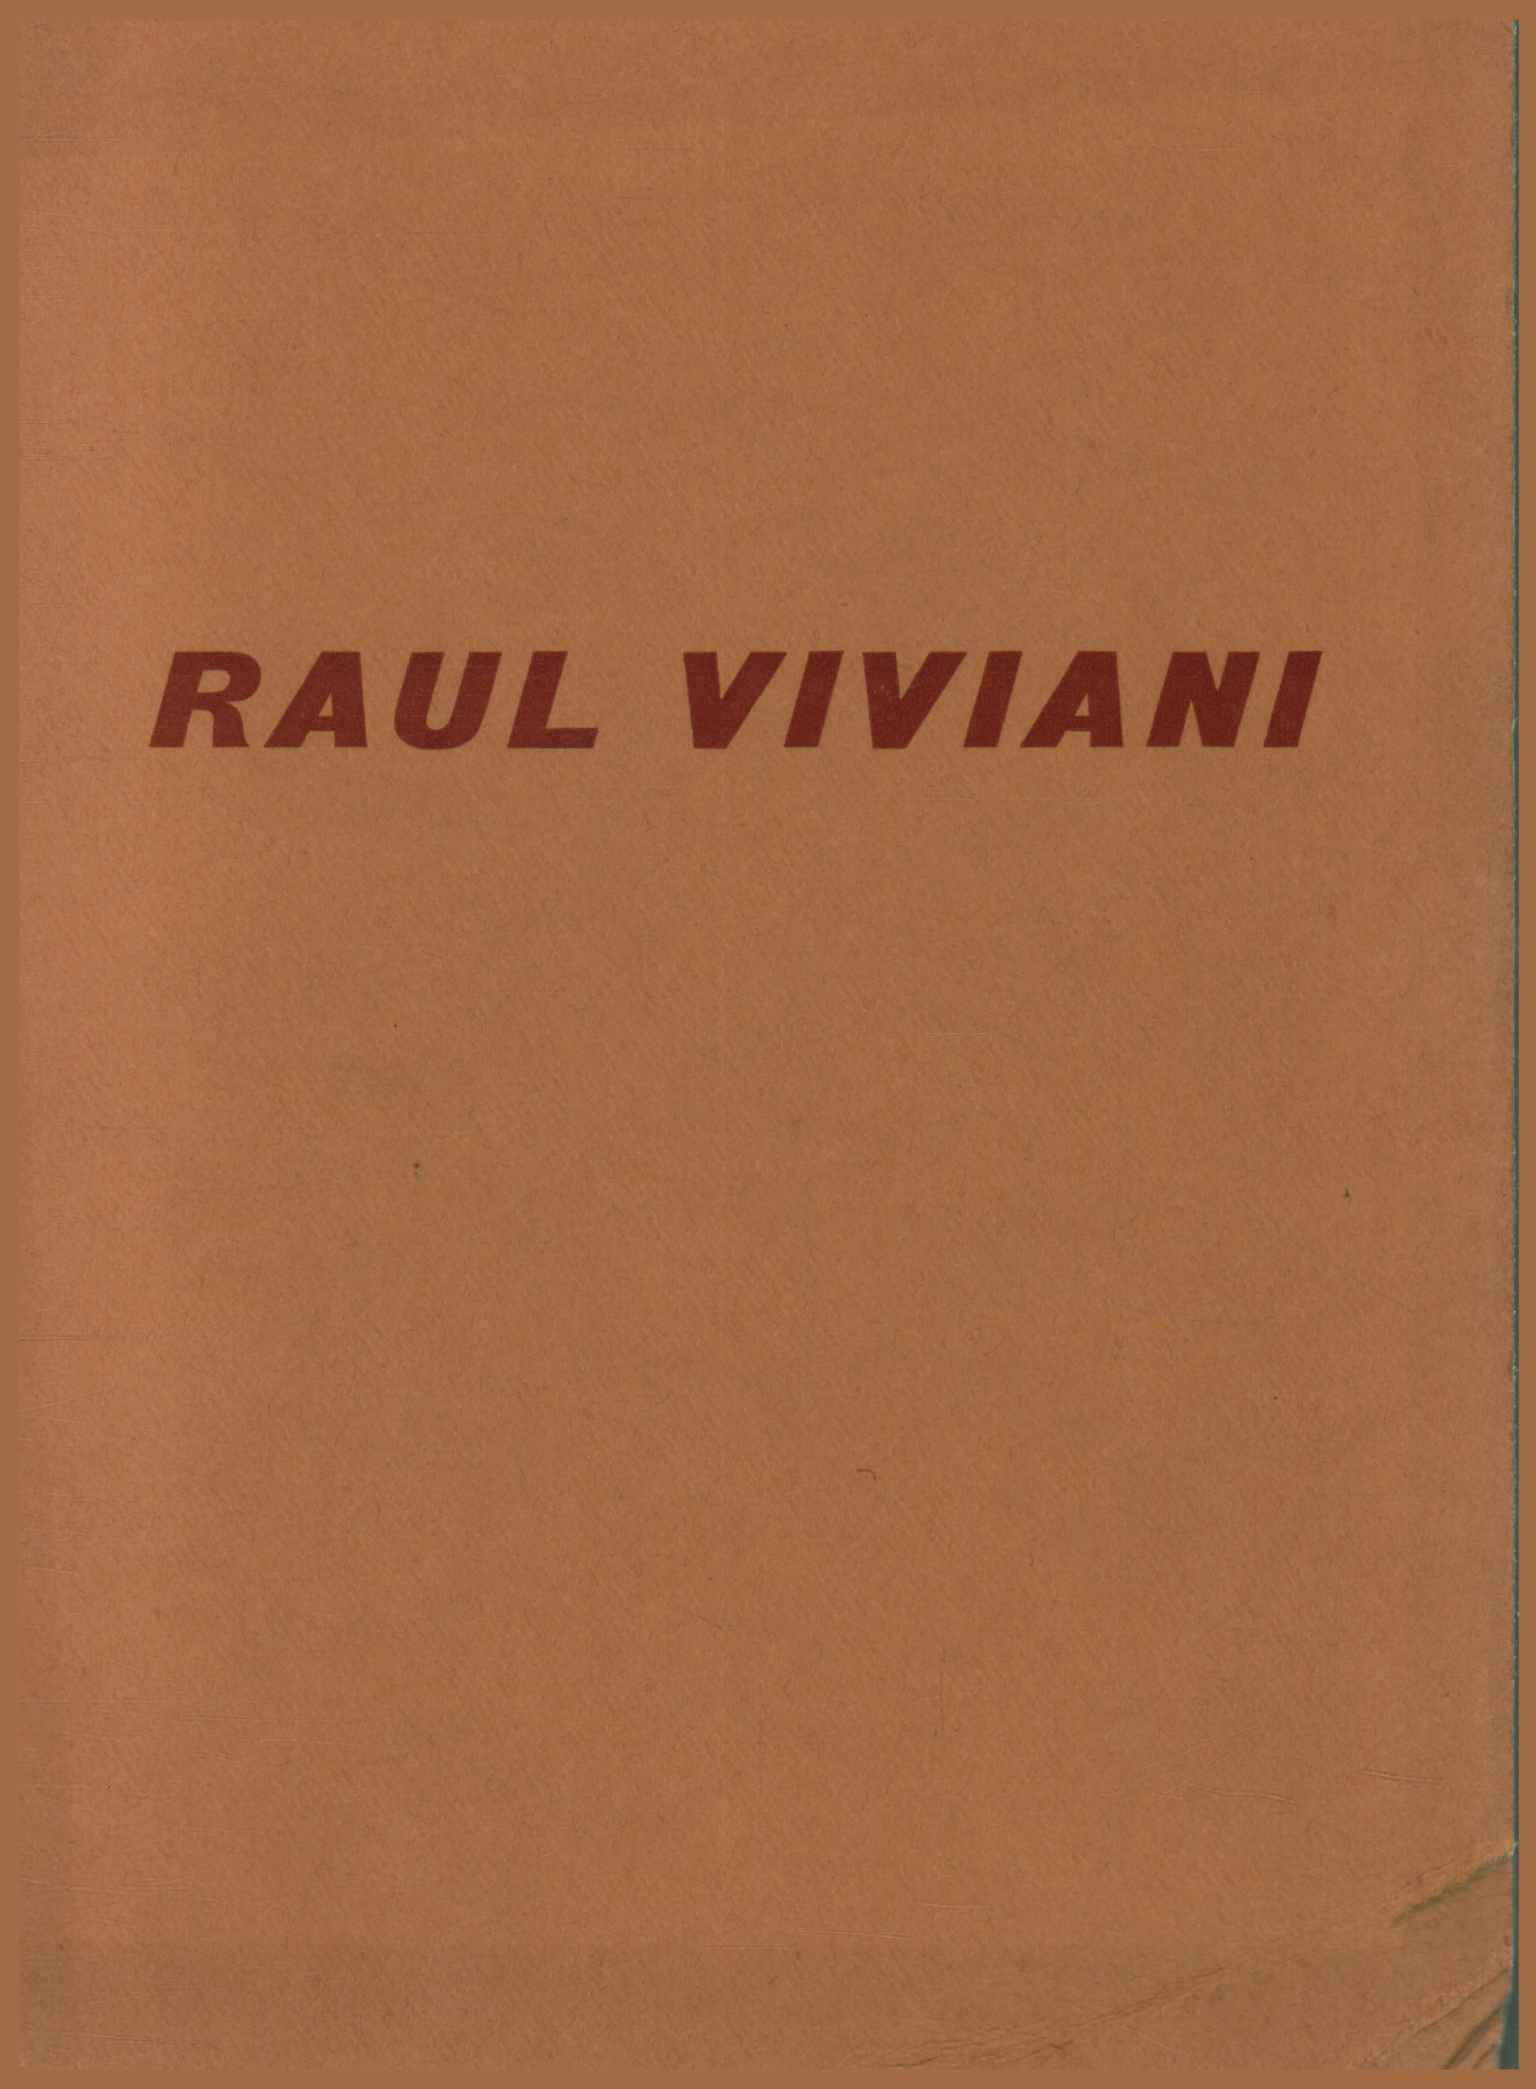 Exposición póstuma de Raúl Viviani (Florencia%,Exposición póstuma de Raúl Viviani (Florencia%